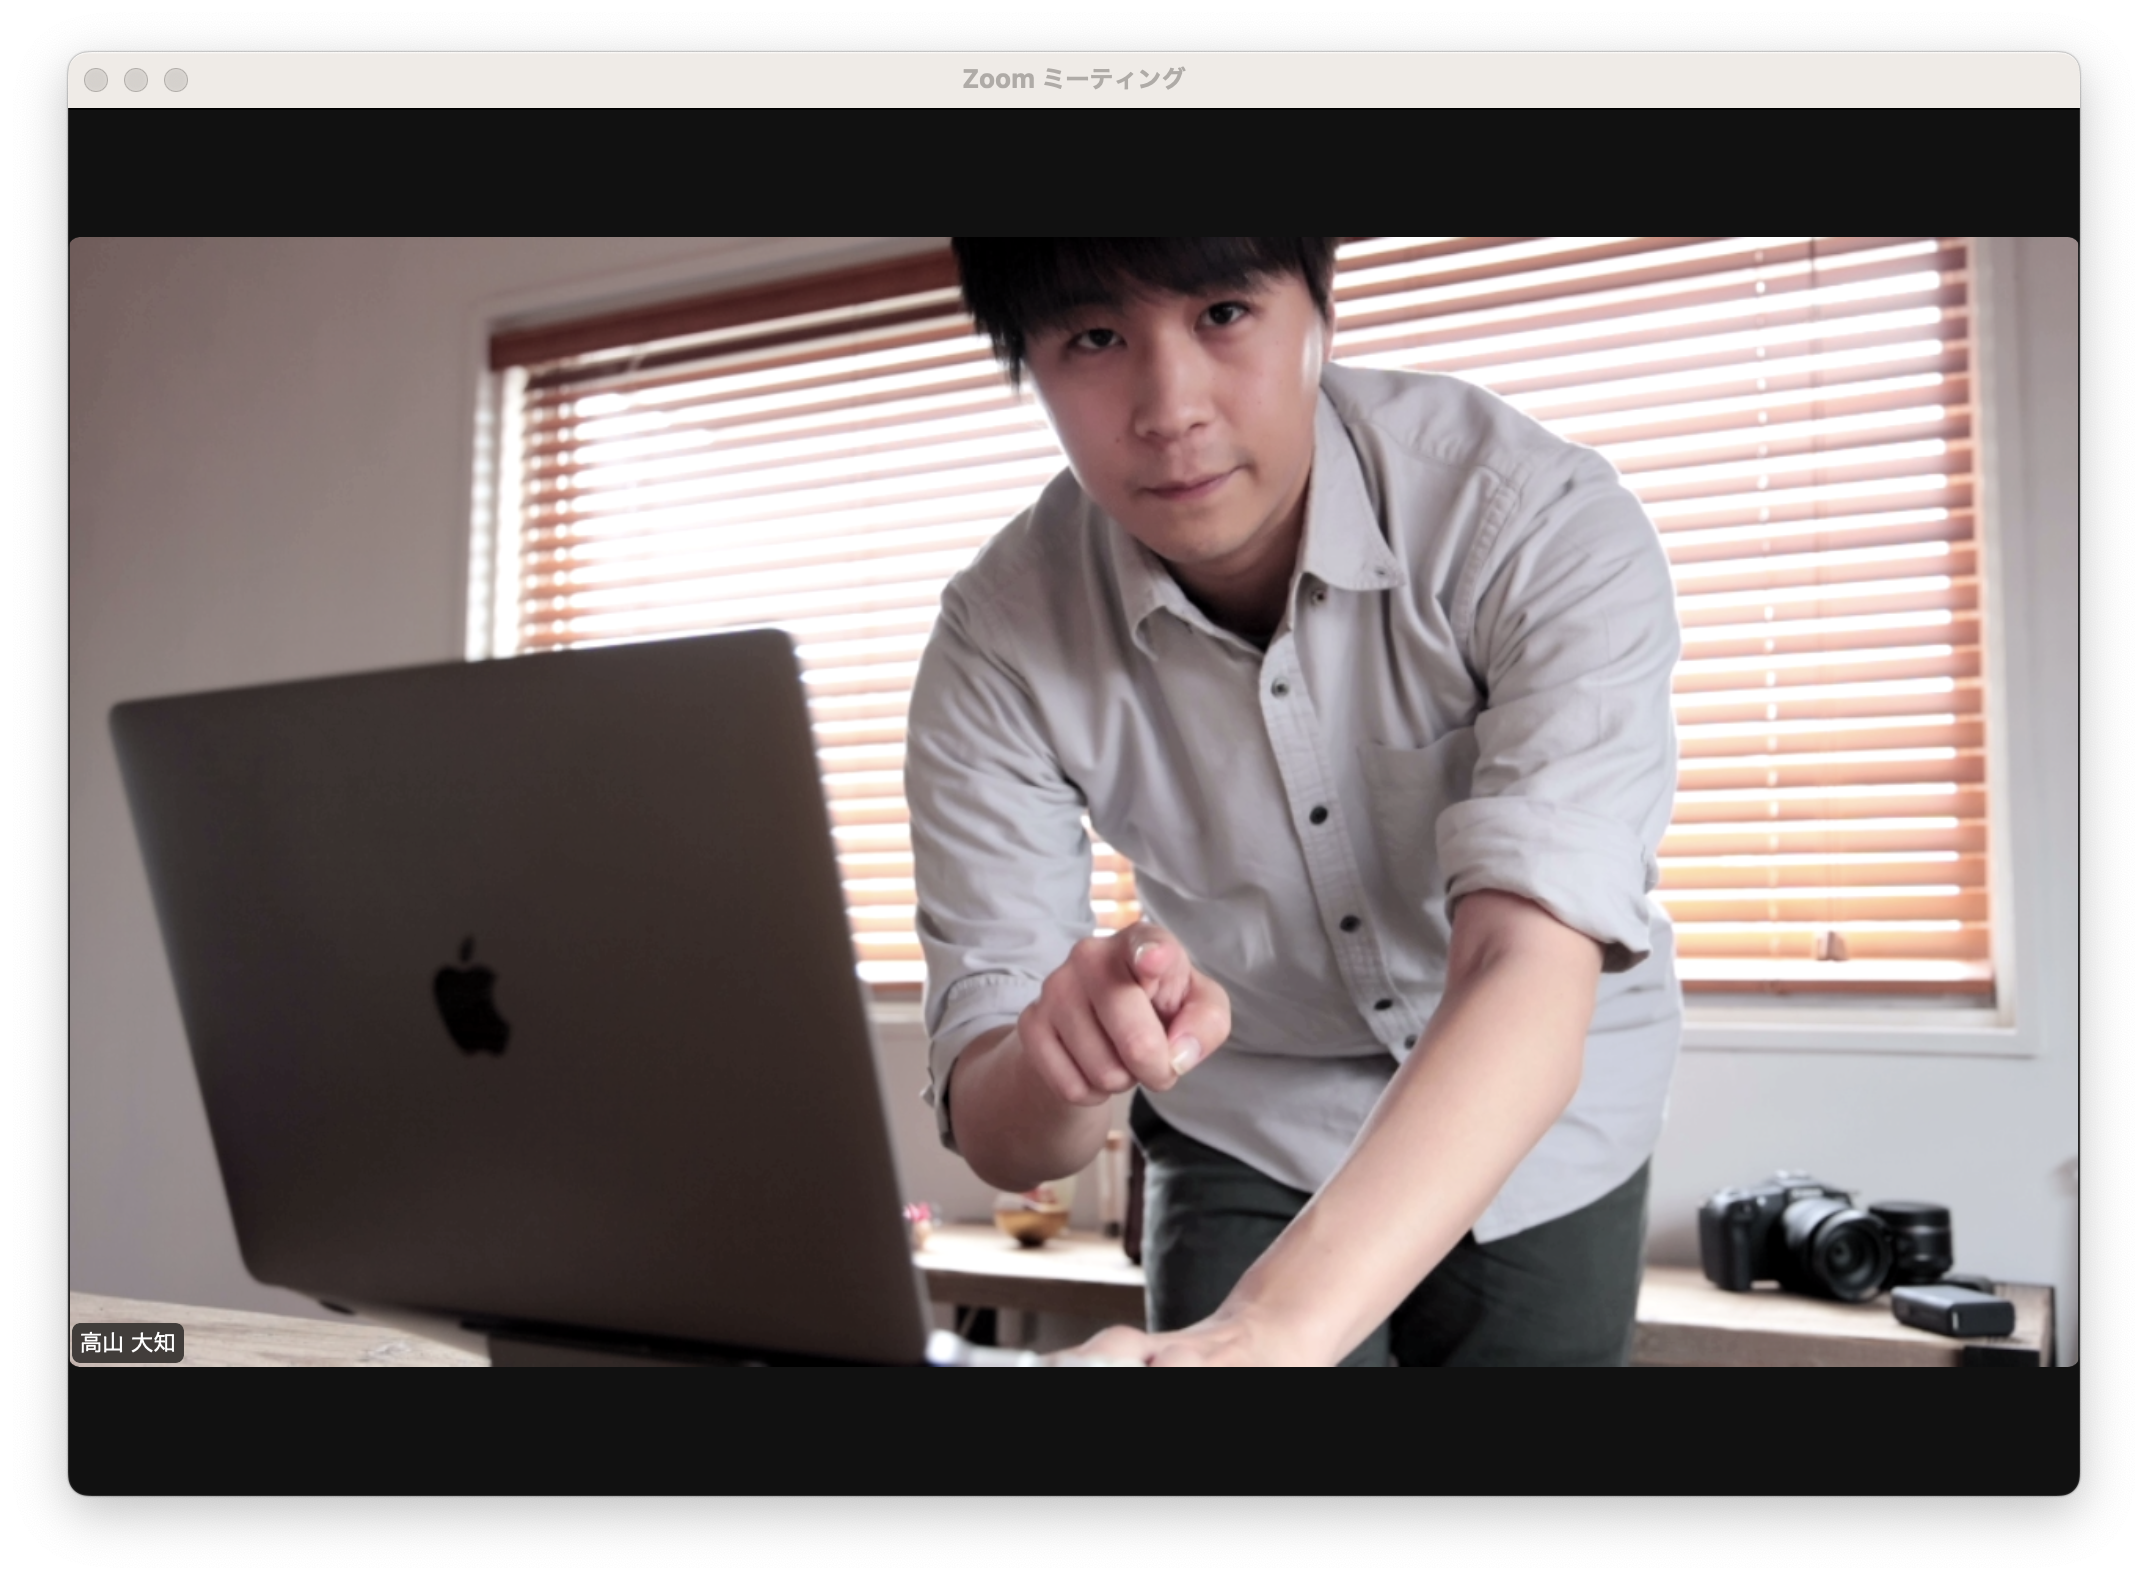 Eos webcam m1 4